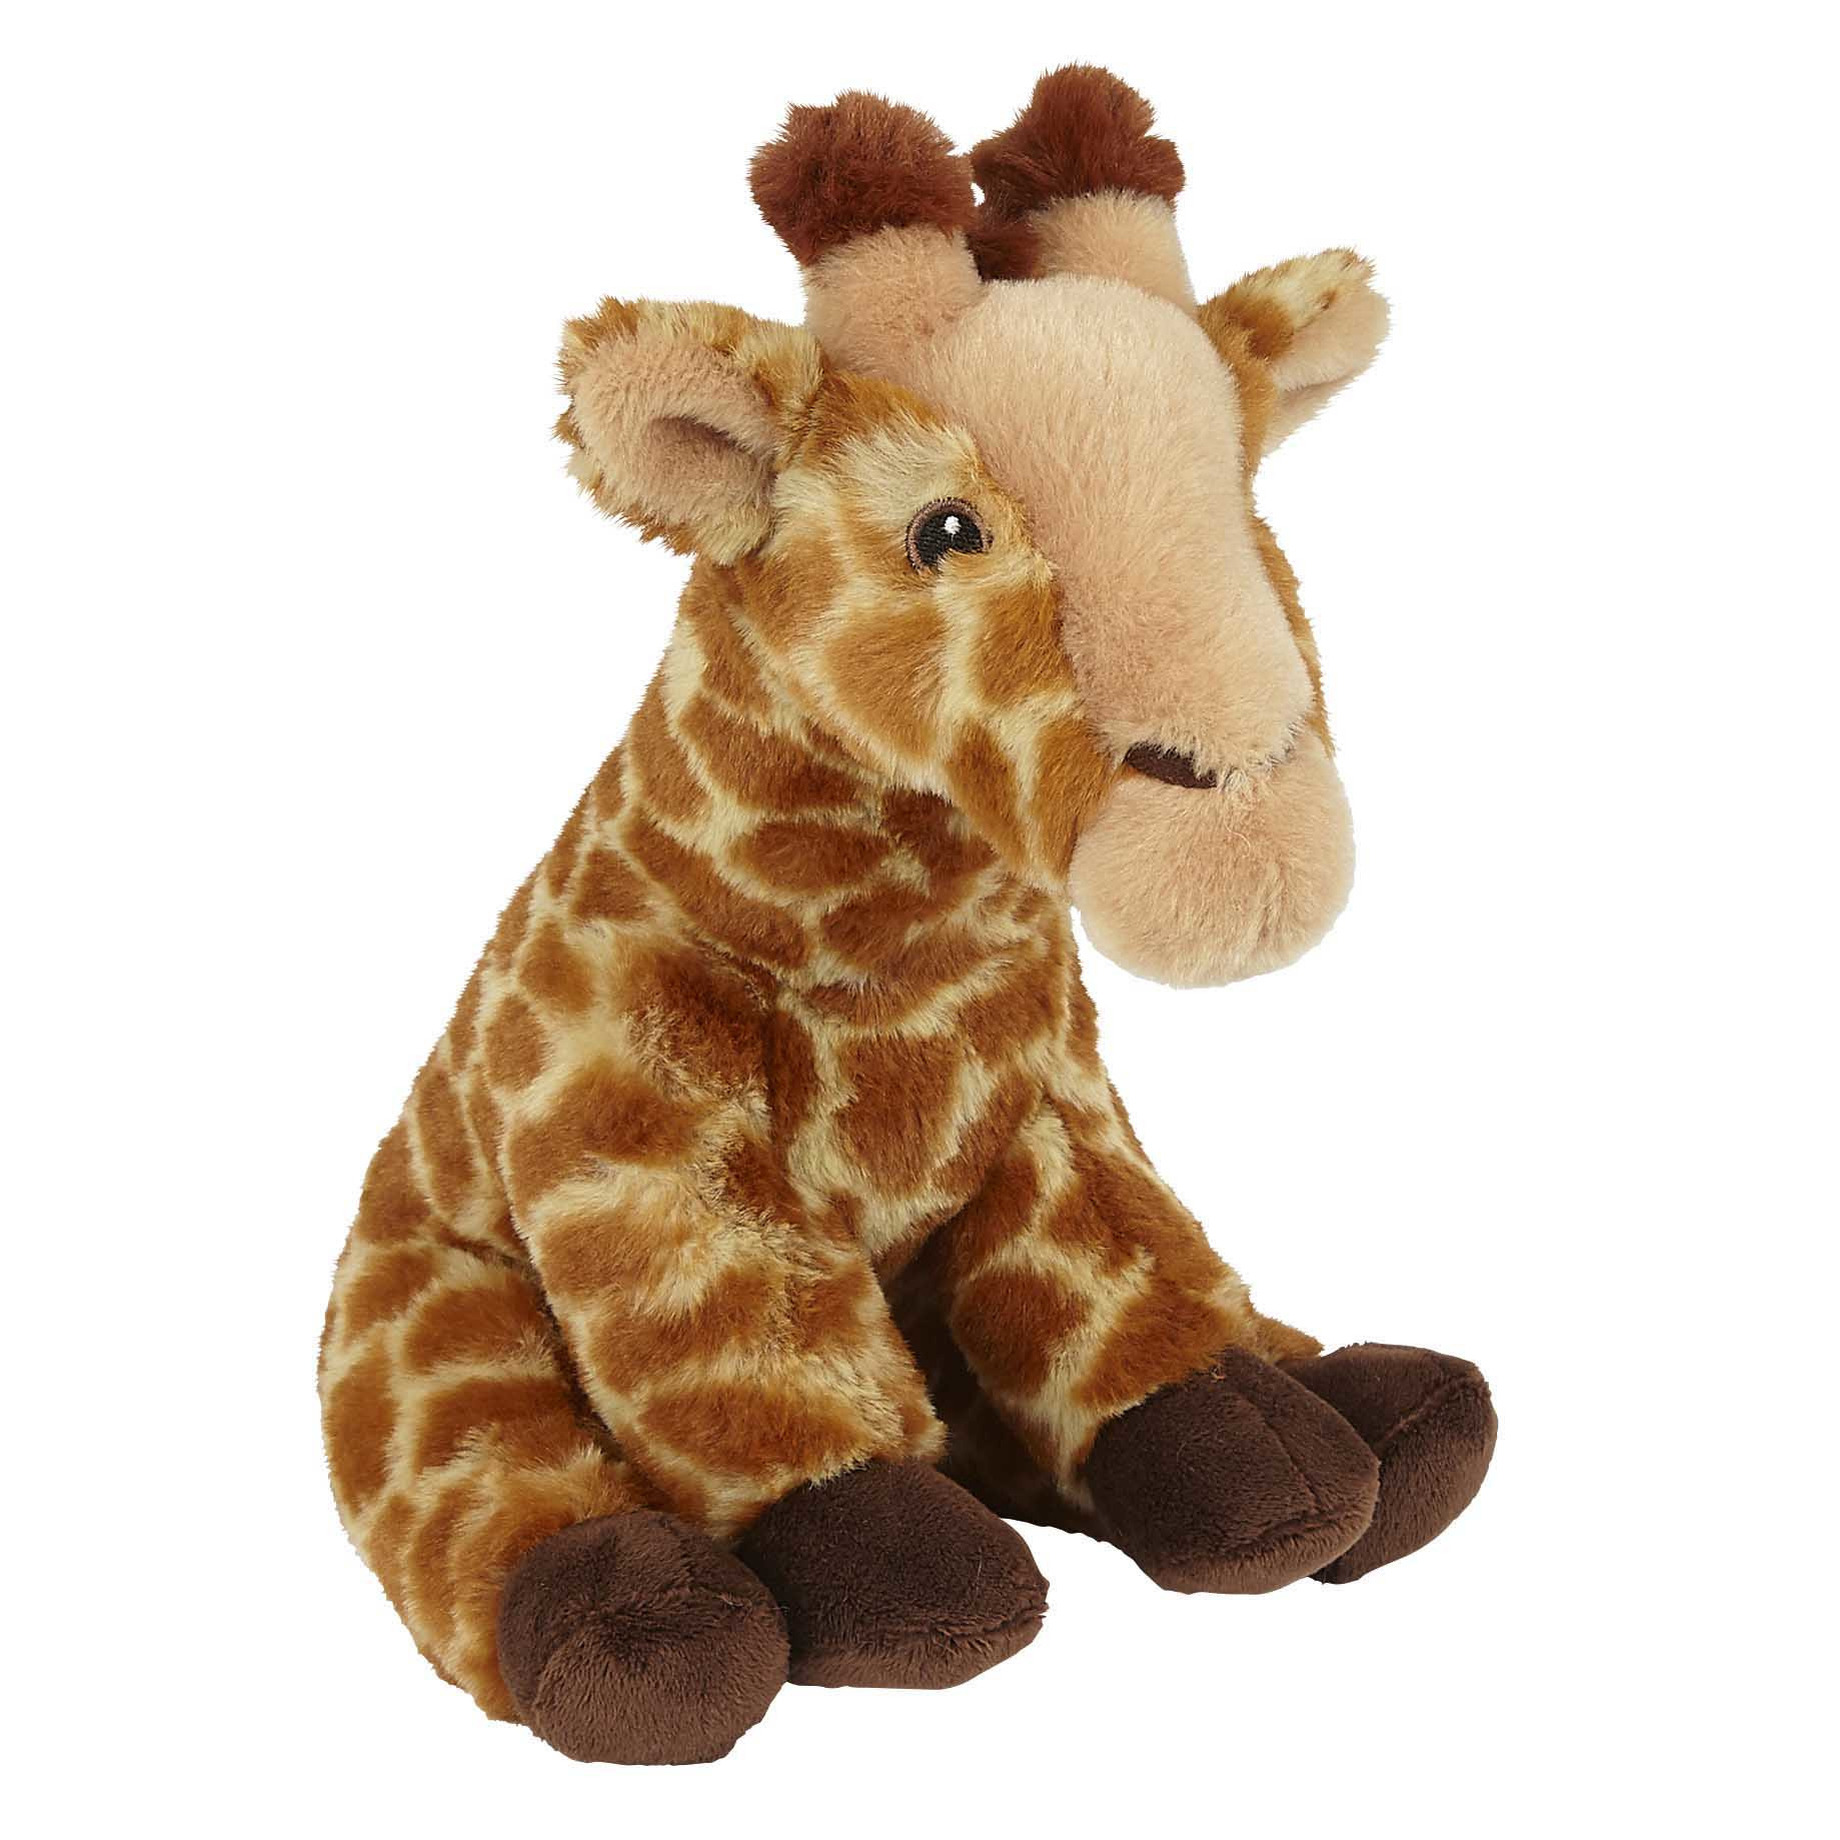 Pluche knuffel dieren Giraffe 23 cm